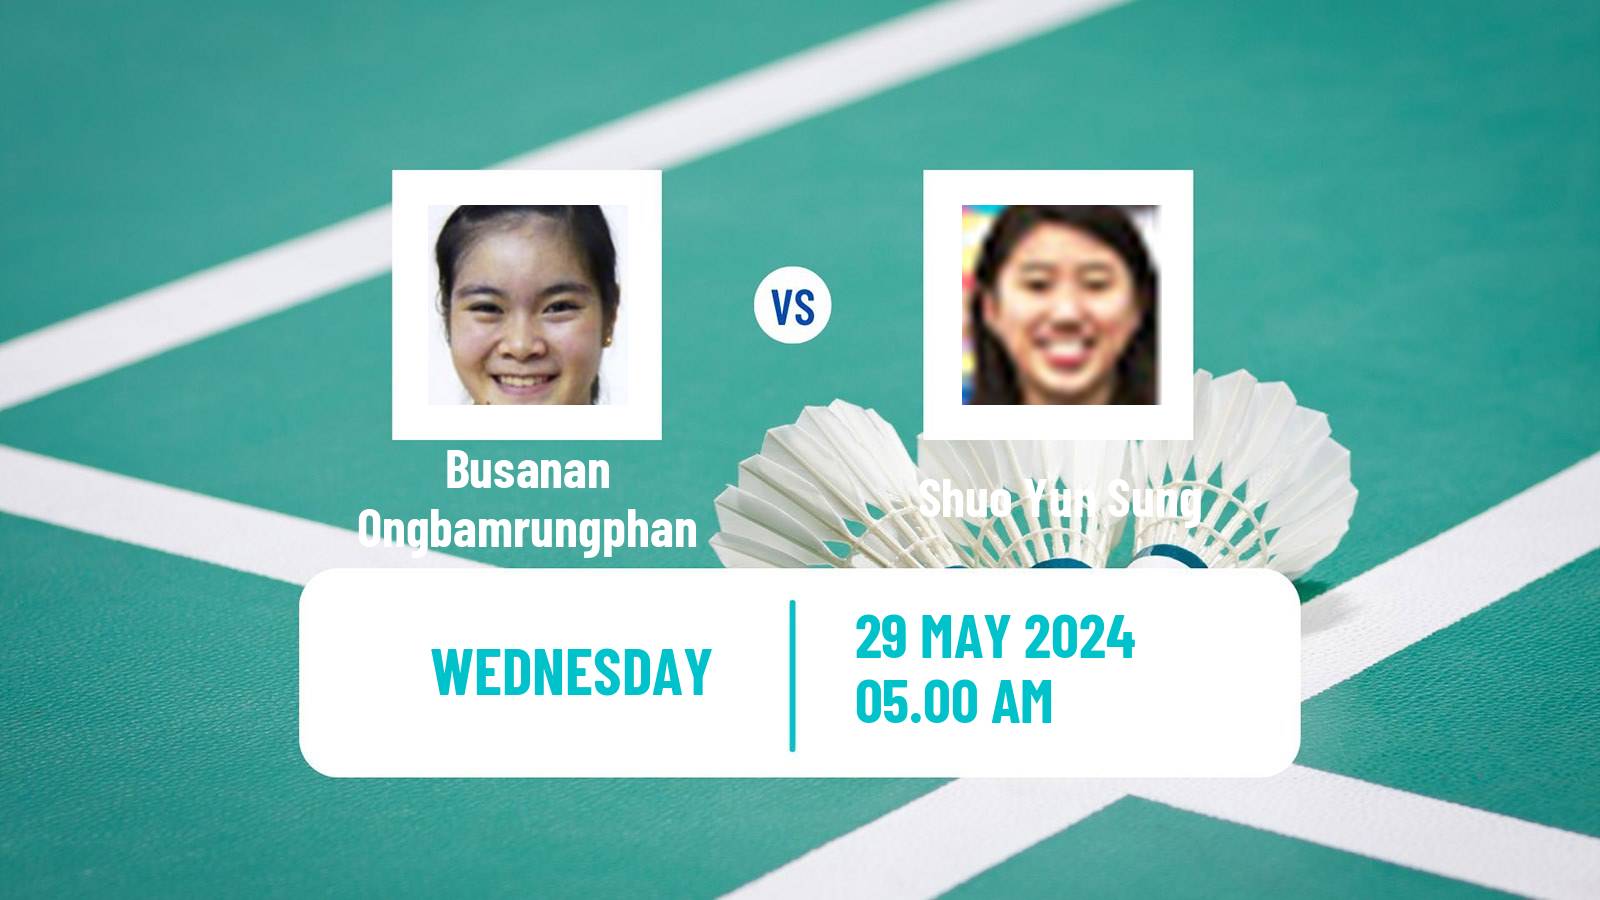 Badminton BWF World Tour Singapore Open Women Busanan Ongbamrungphan - Shuo Yun Sung